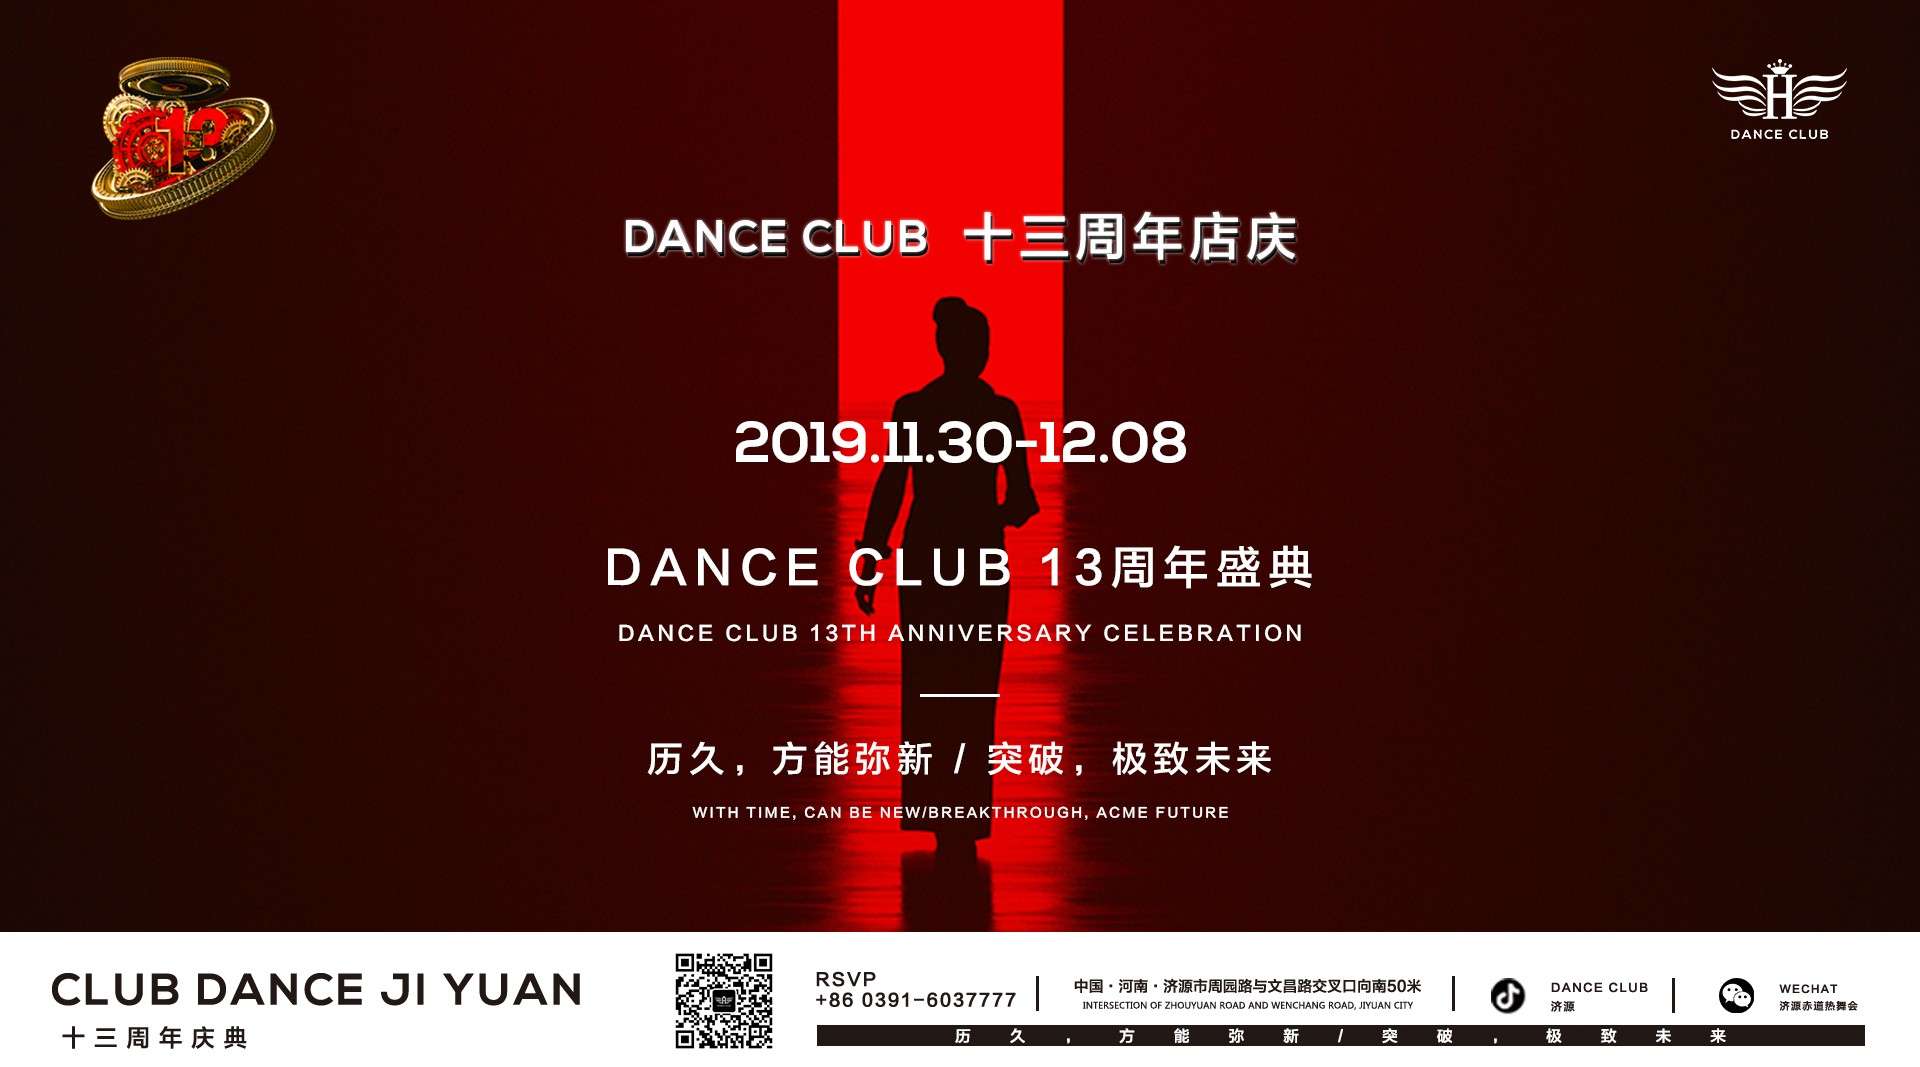 2019.11.30 - 12.08 |  赤道热舞酒吧十三周年盛典明星祝福